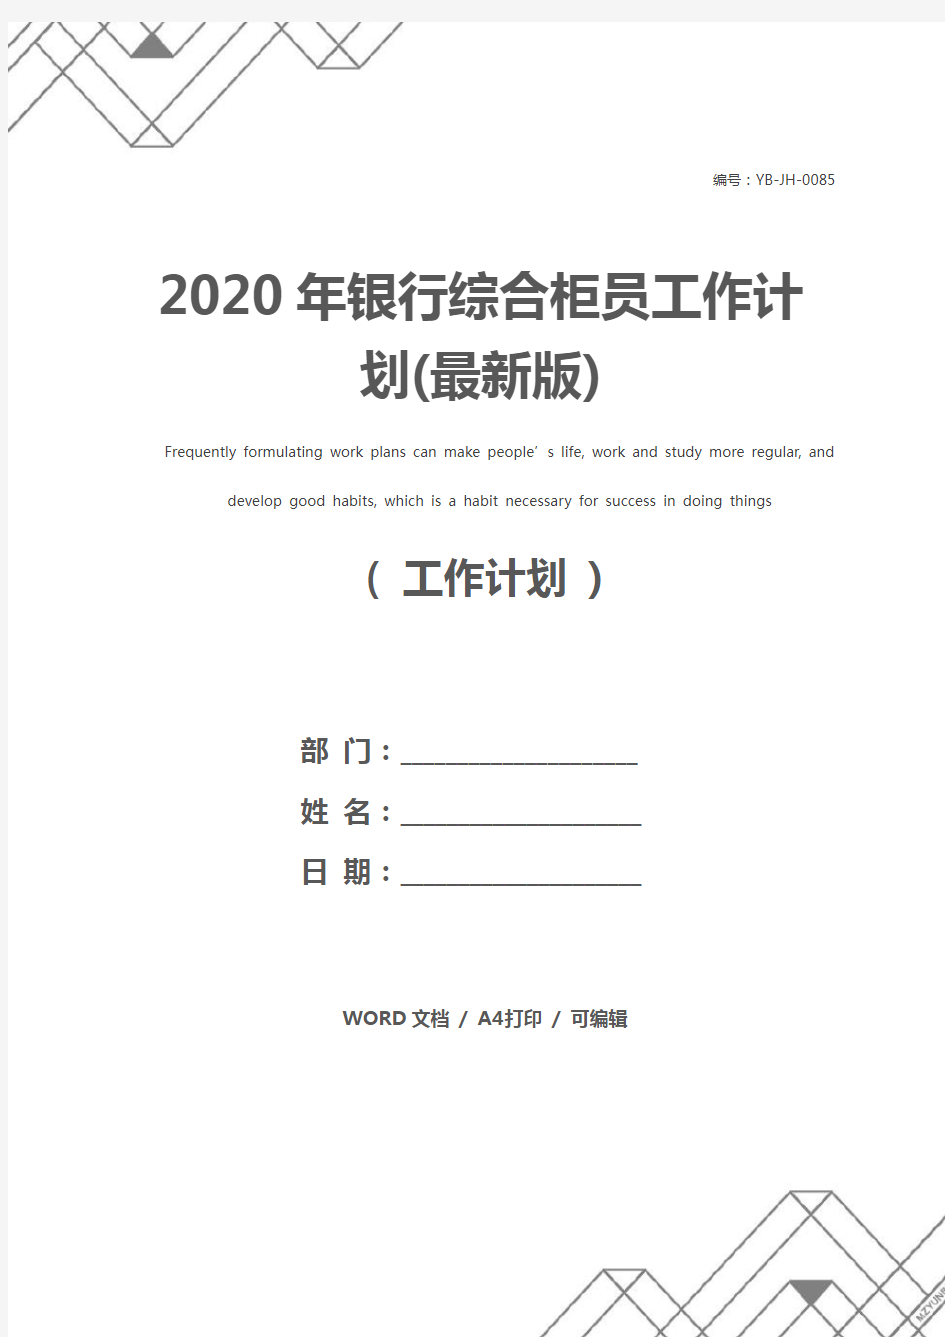 2020年银行综合柜员工作计划(最新版)